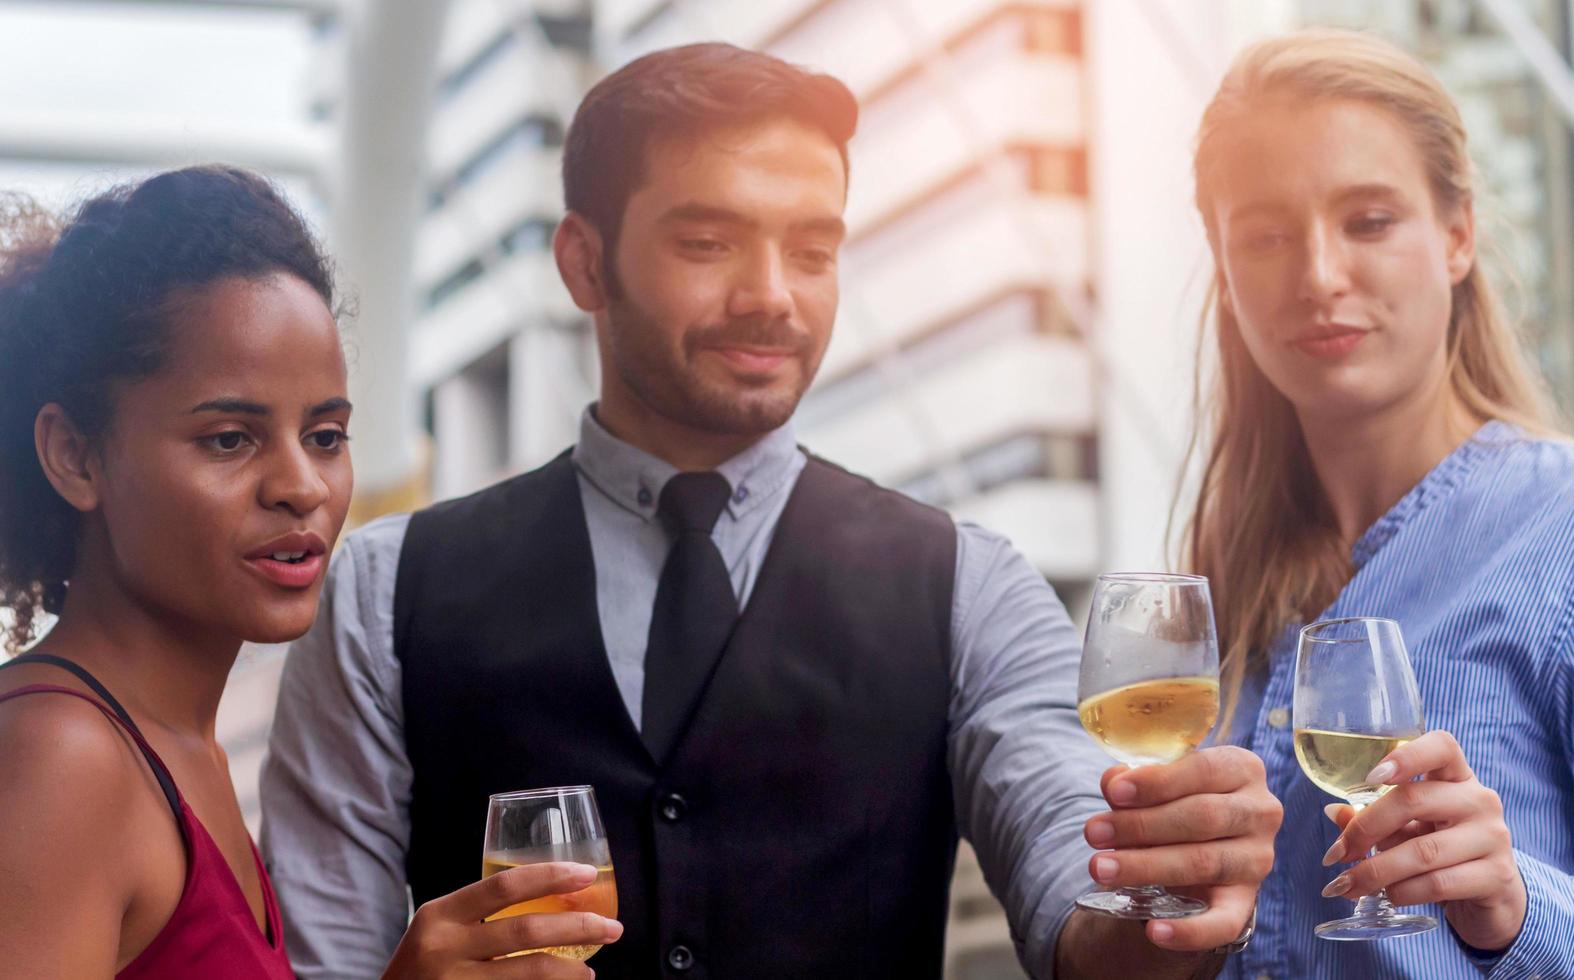 Geschäftsteam, das gerne den Sieg in den Büroalkoholgläsern zusammen mit Wein und Champagner feiert foto